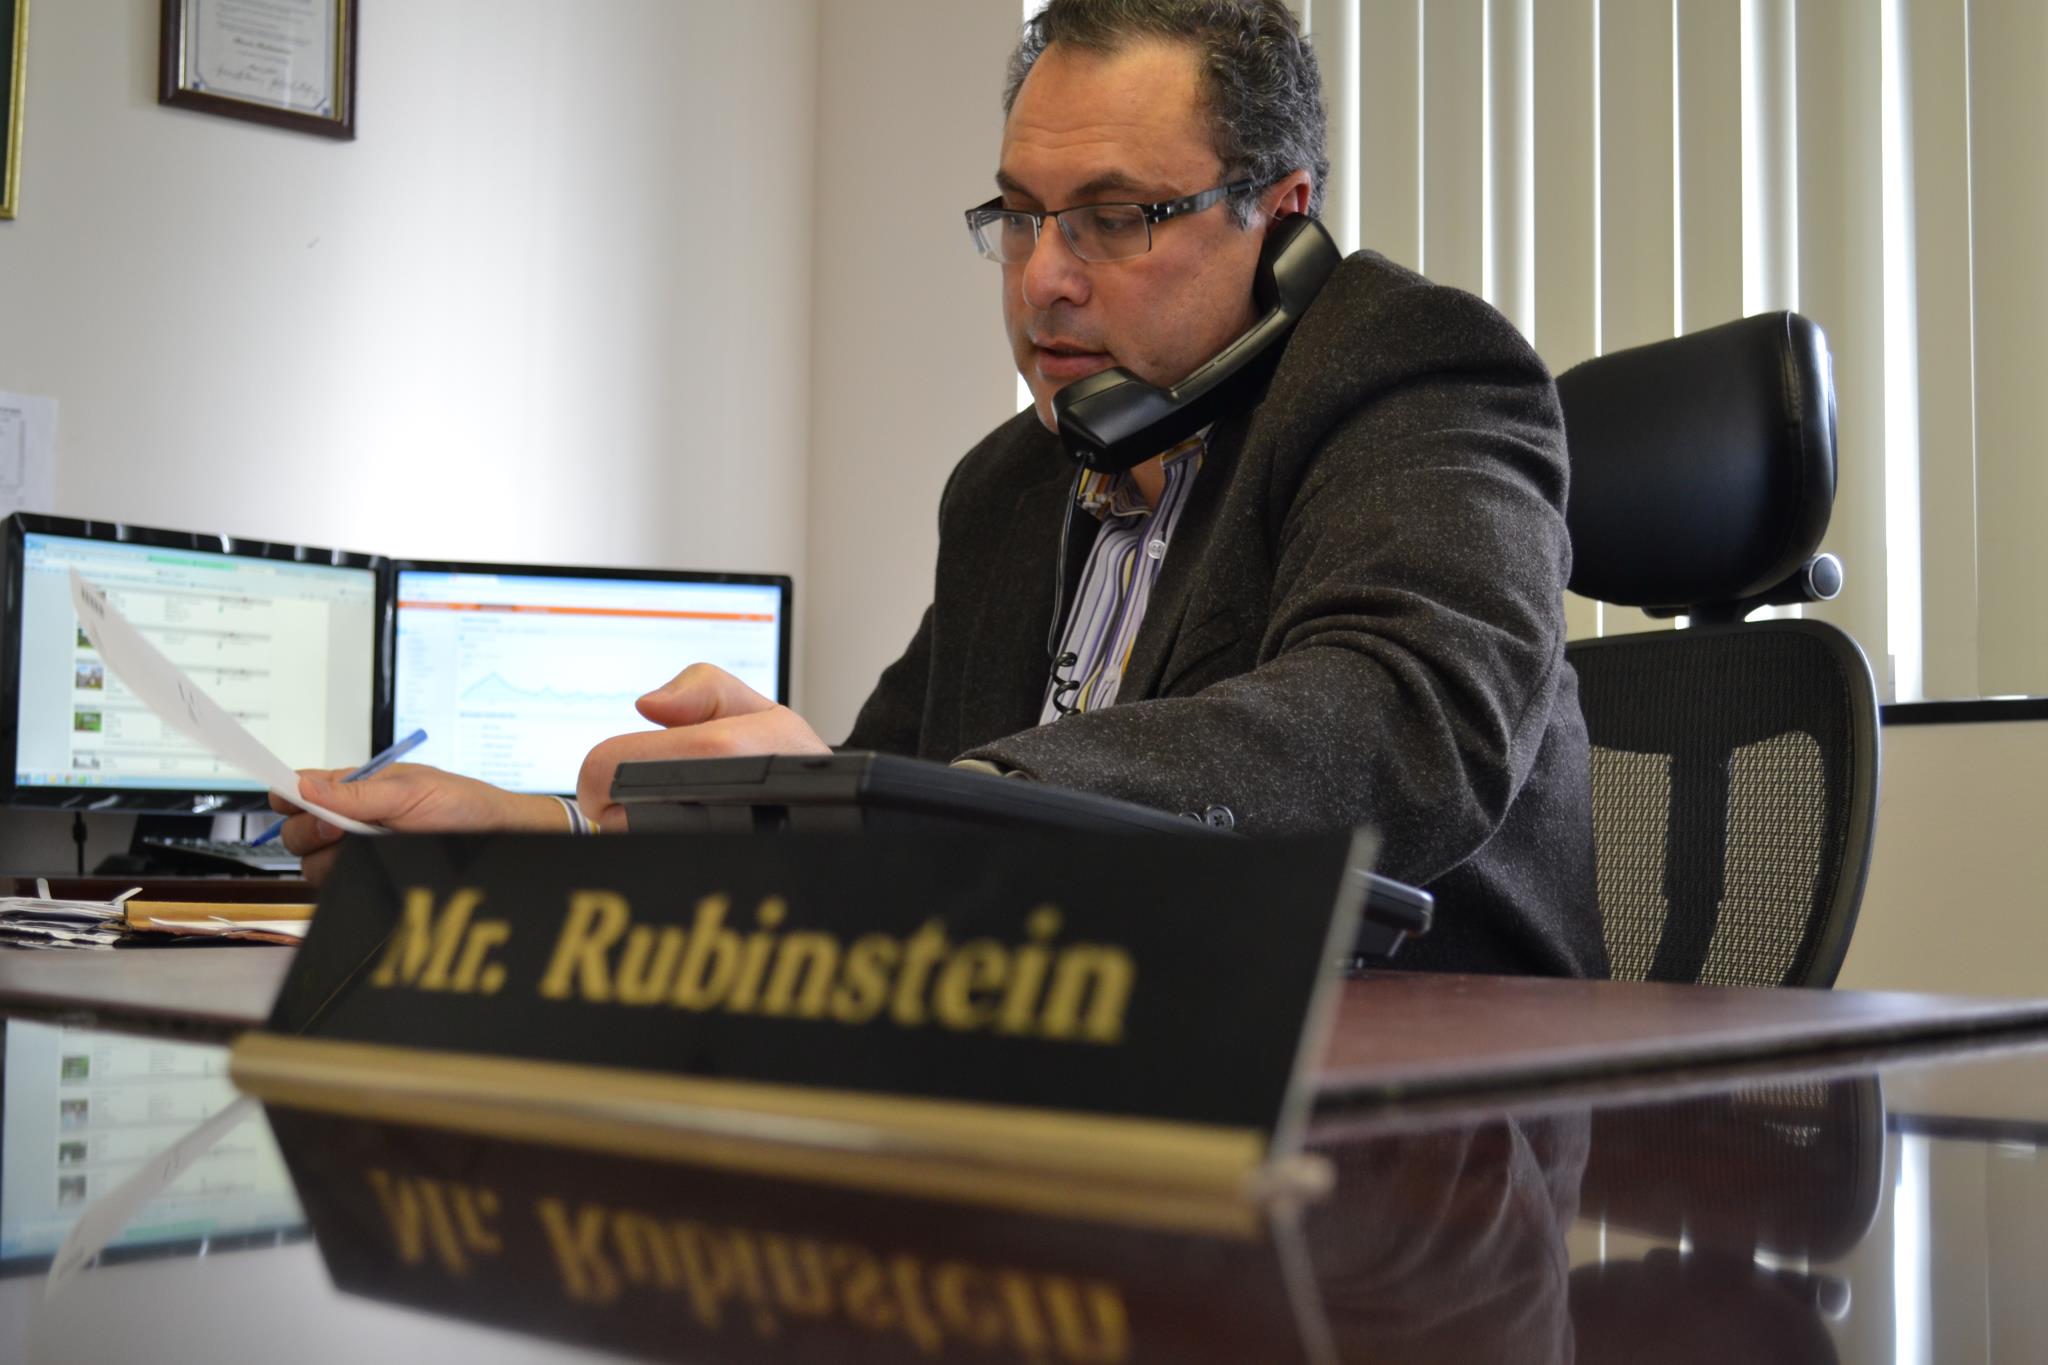 ¿Quién es el abogado Rubinstein?